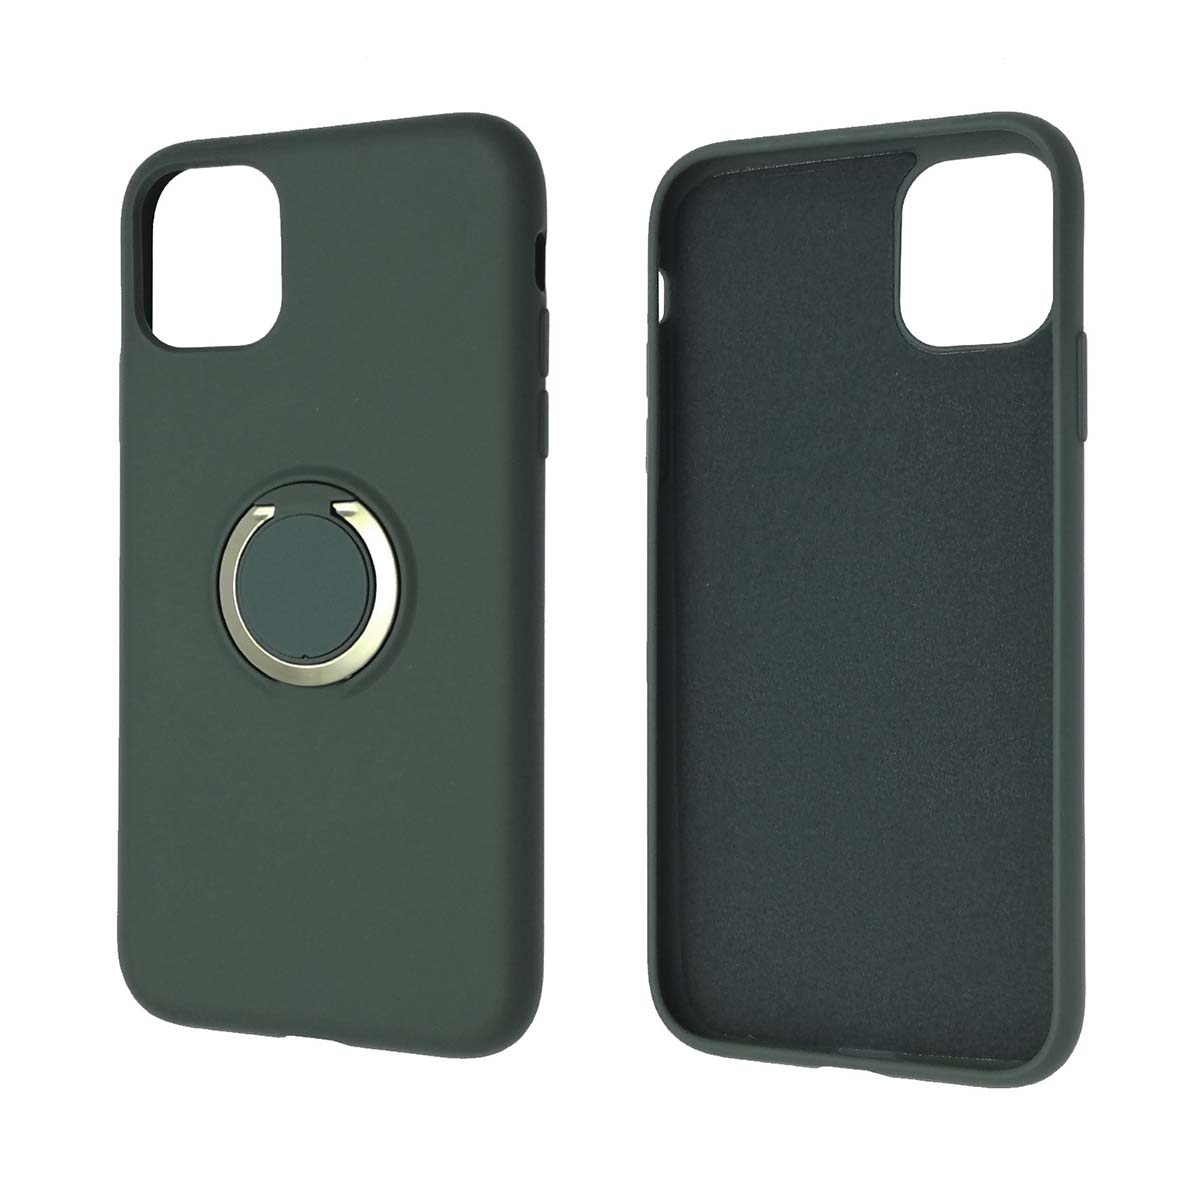 Чехол накладка RING для APPLE iPhone 11, силикон, кольцо держатель, цвет темно зеленый.